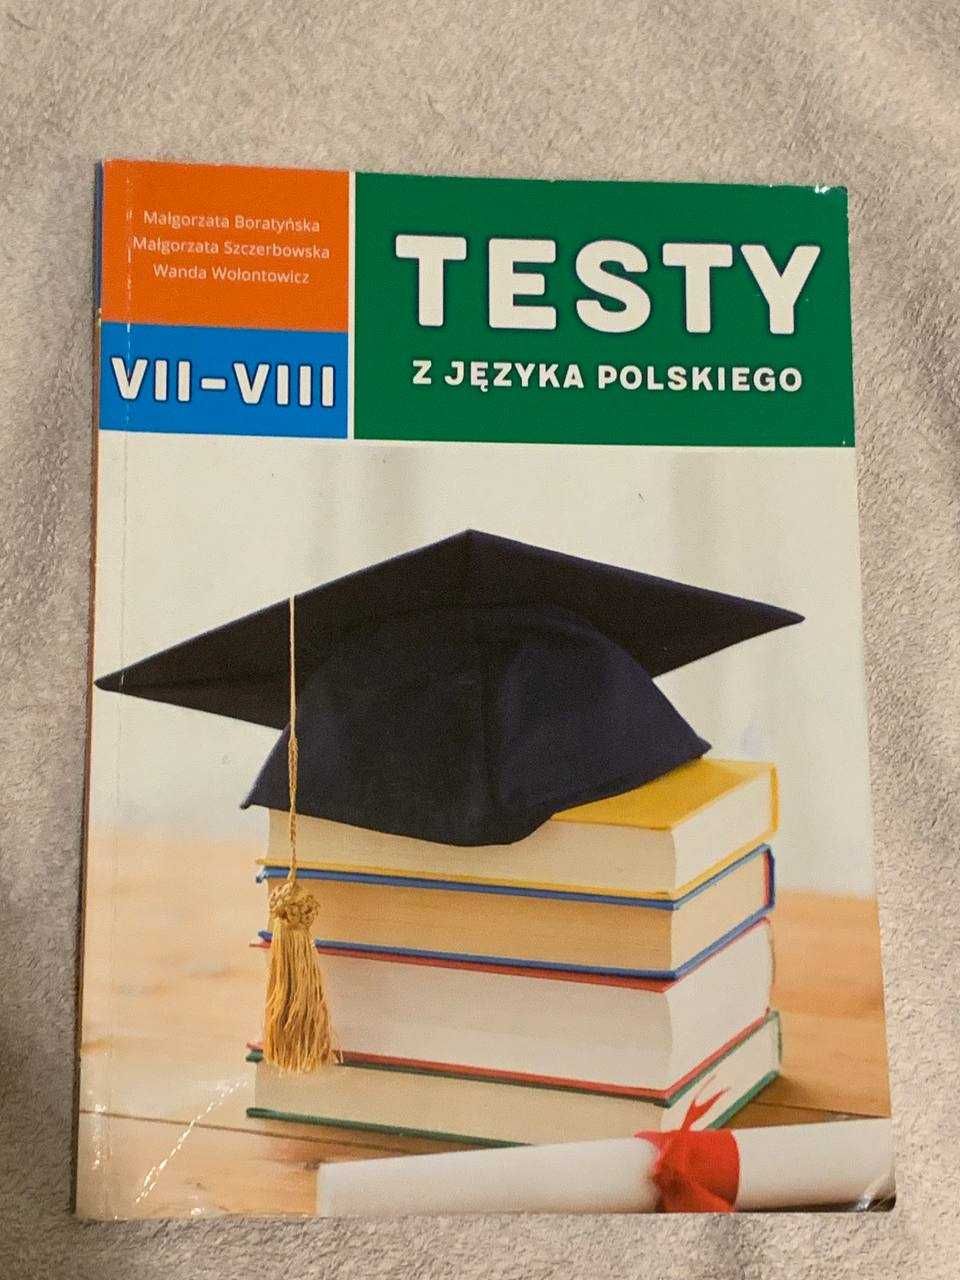 Testy z Języka polskiego VII-VIII nie popisane